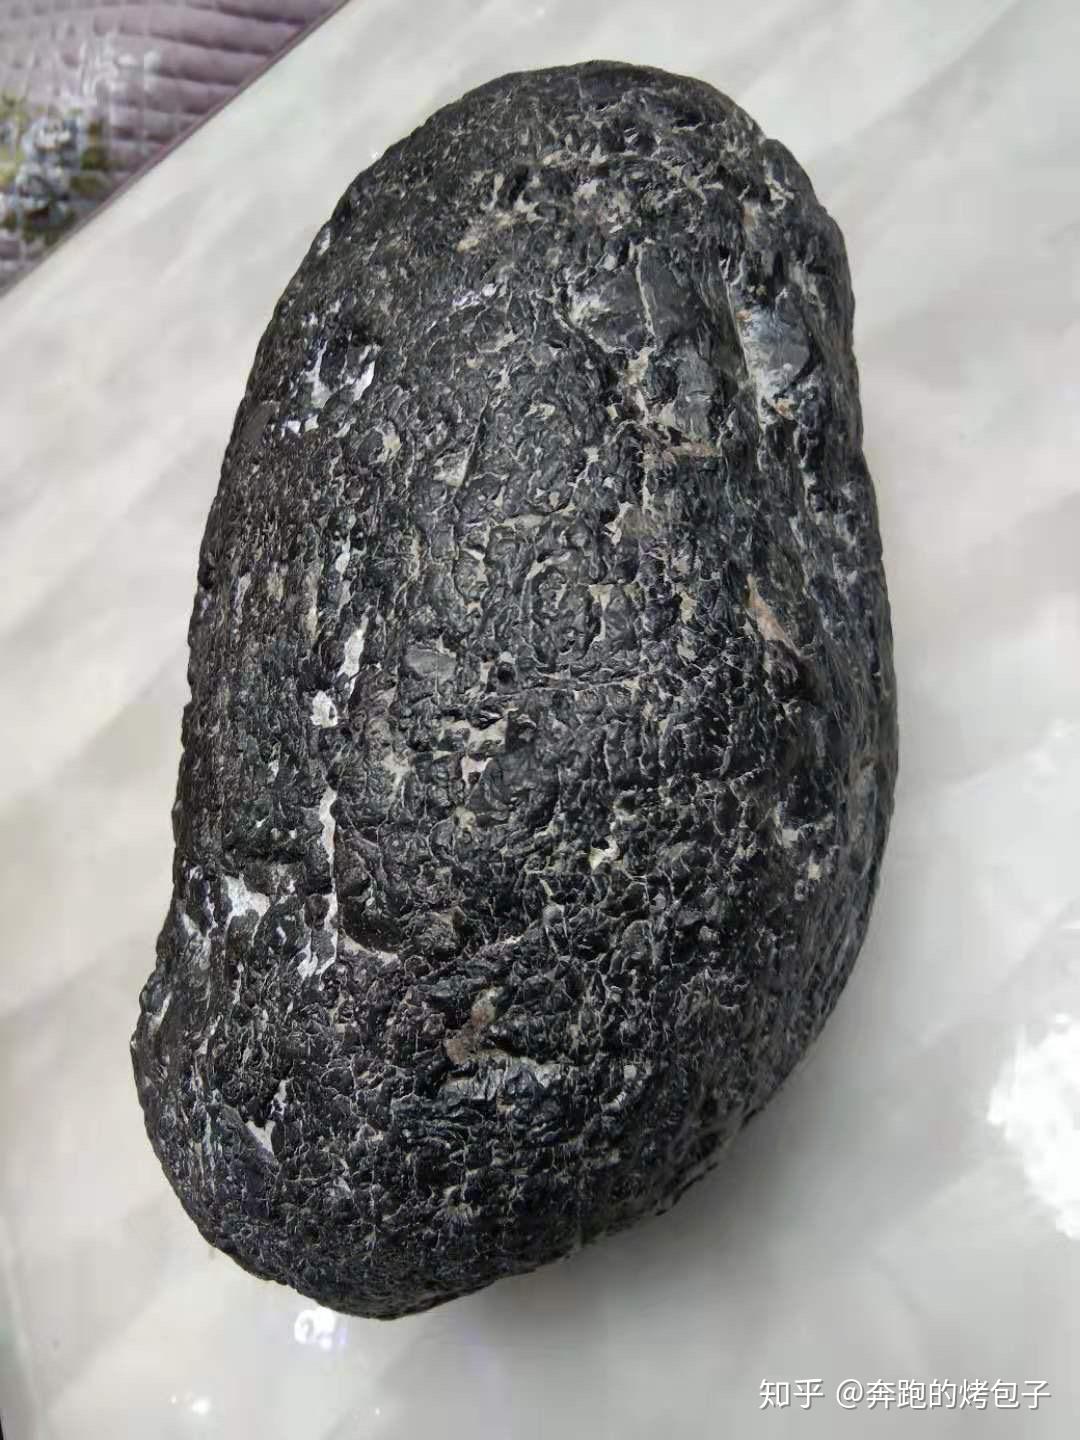 有没有铁子知道这是什么石头?